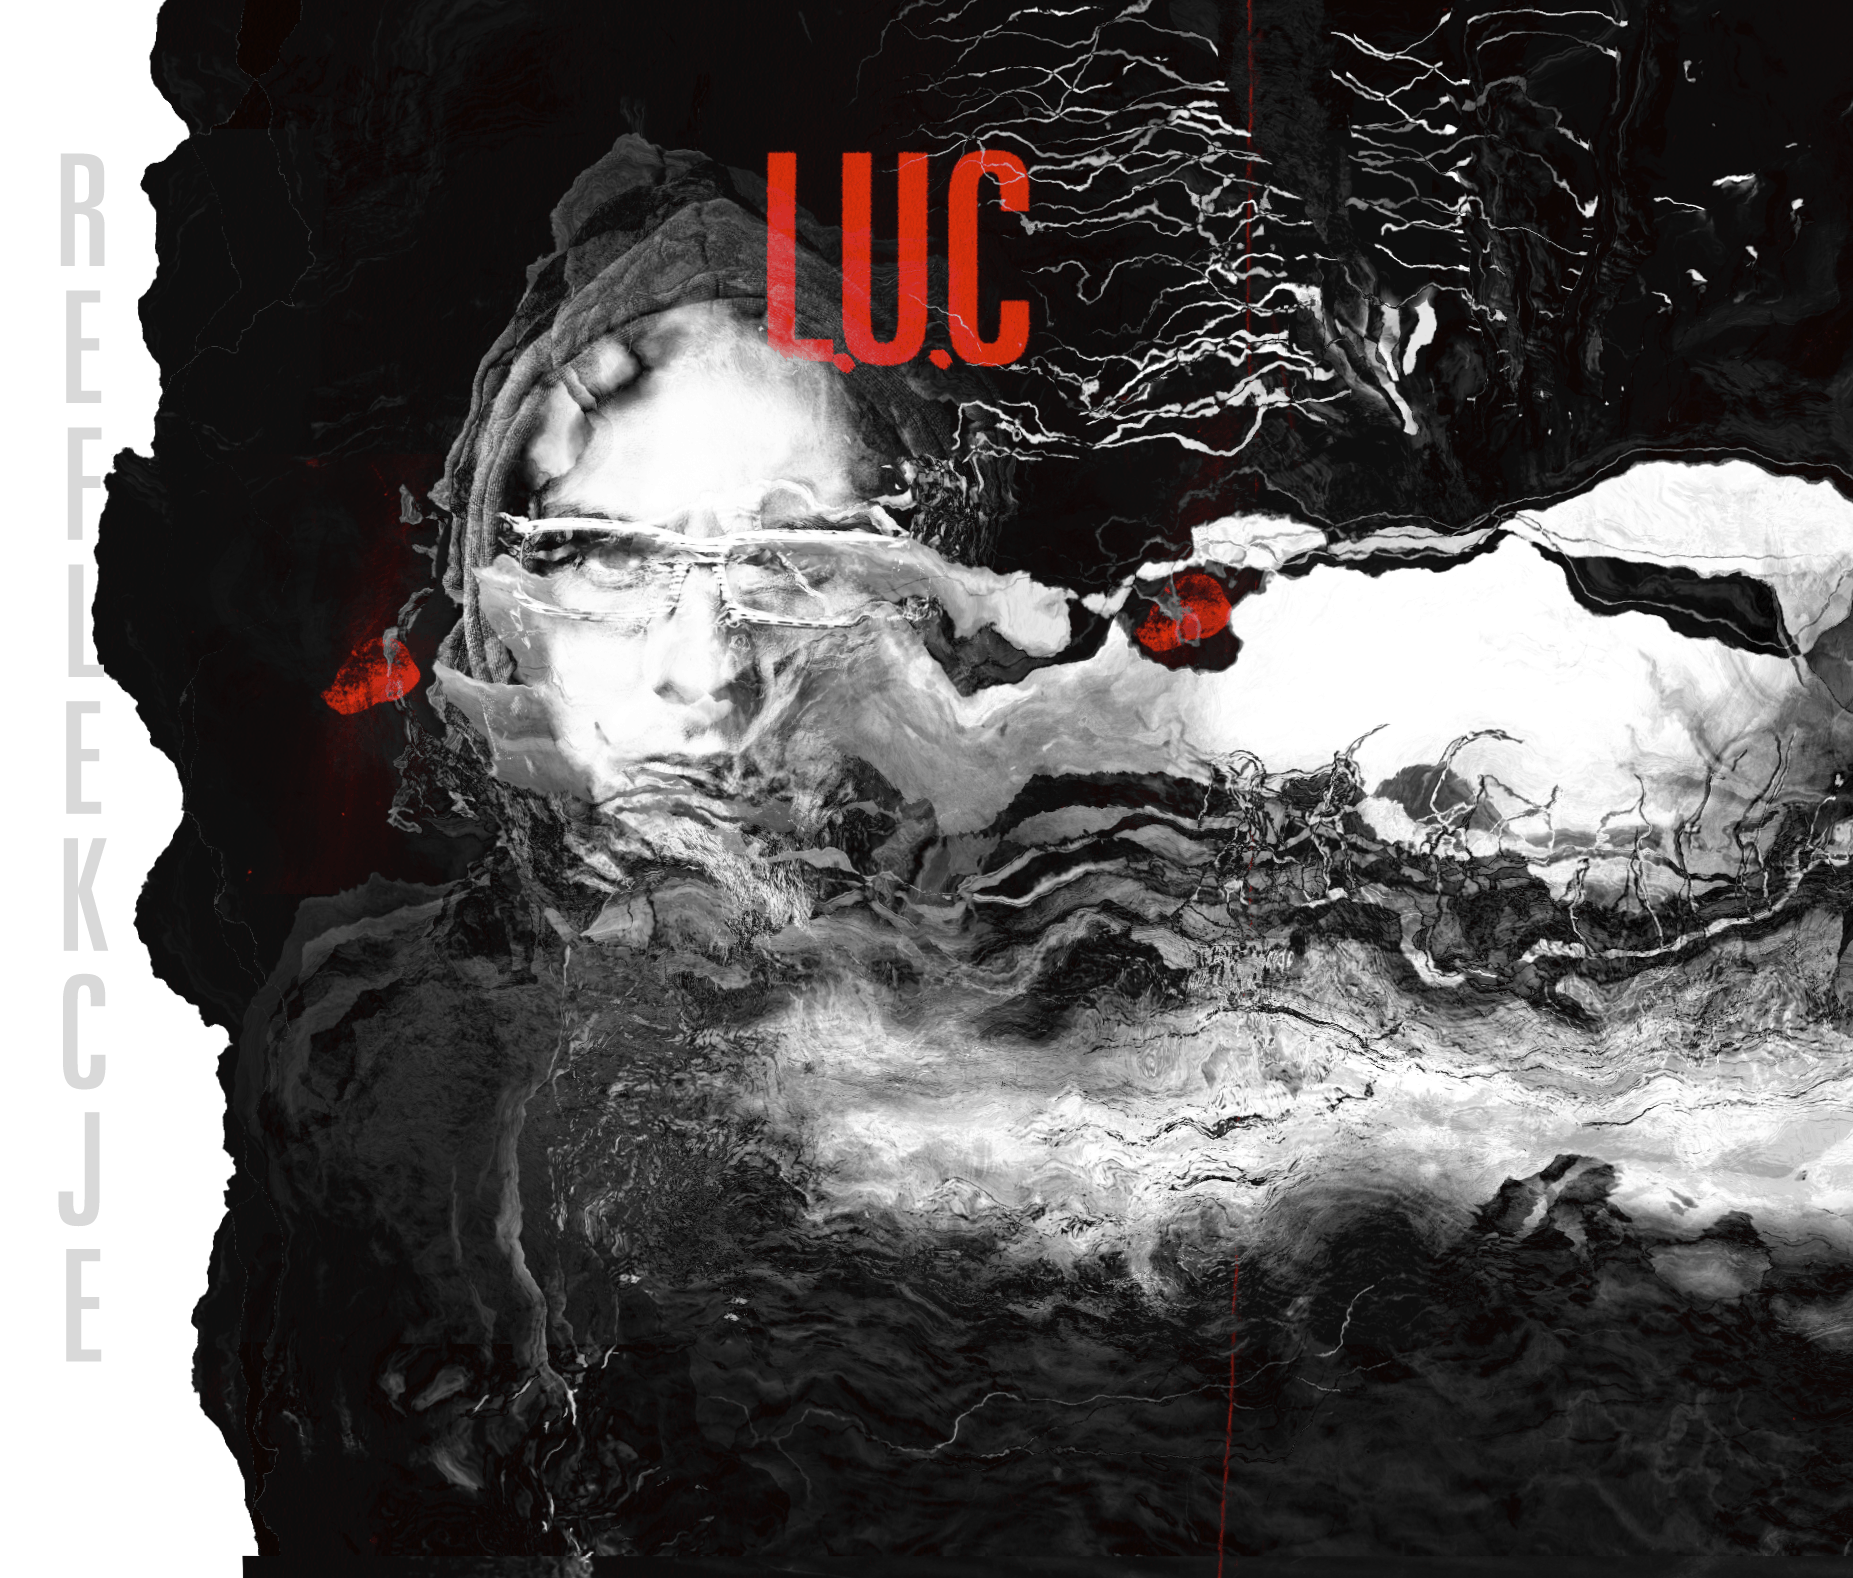  L.U.Ca zapowiada nowy album